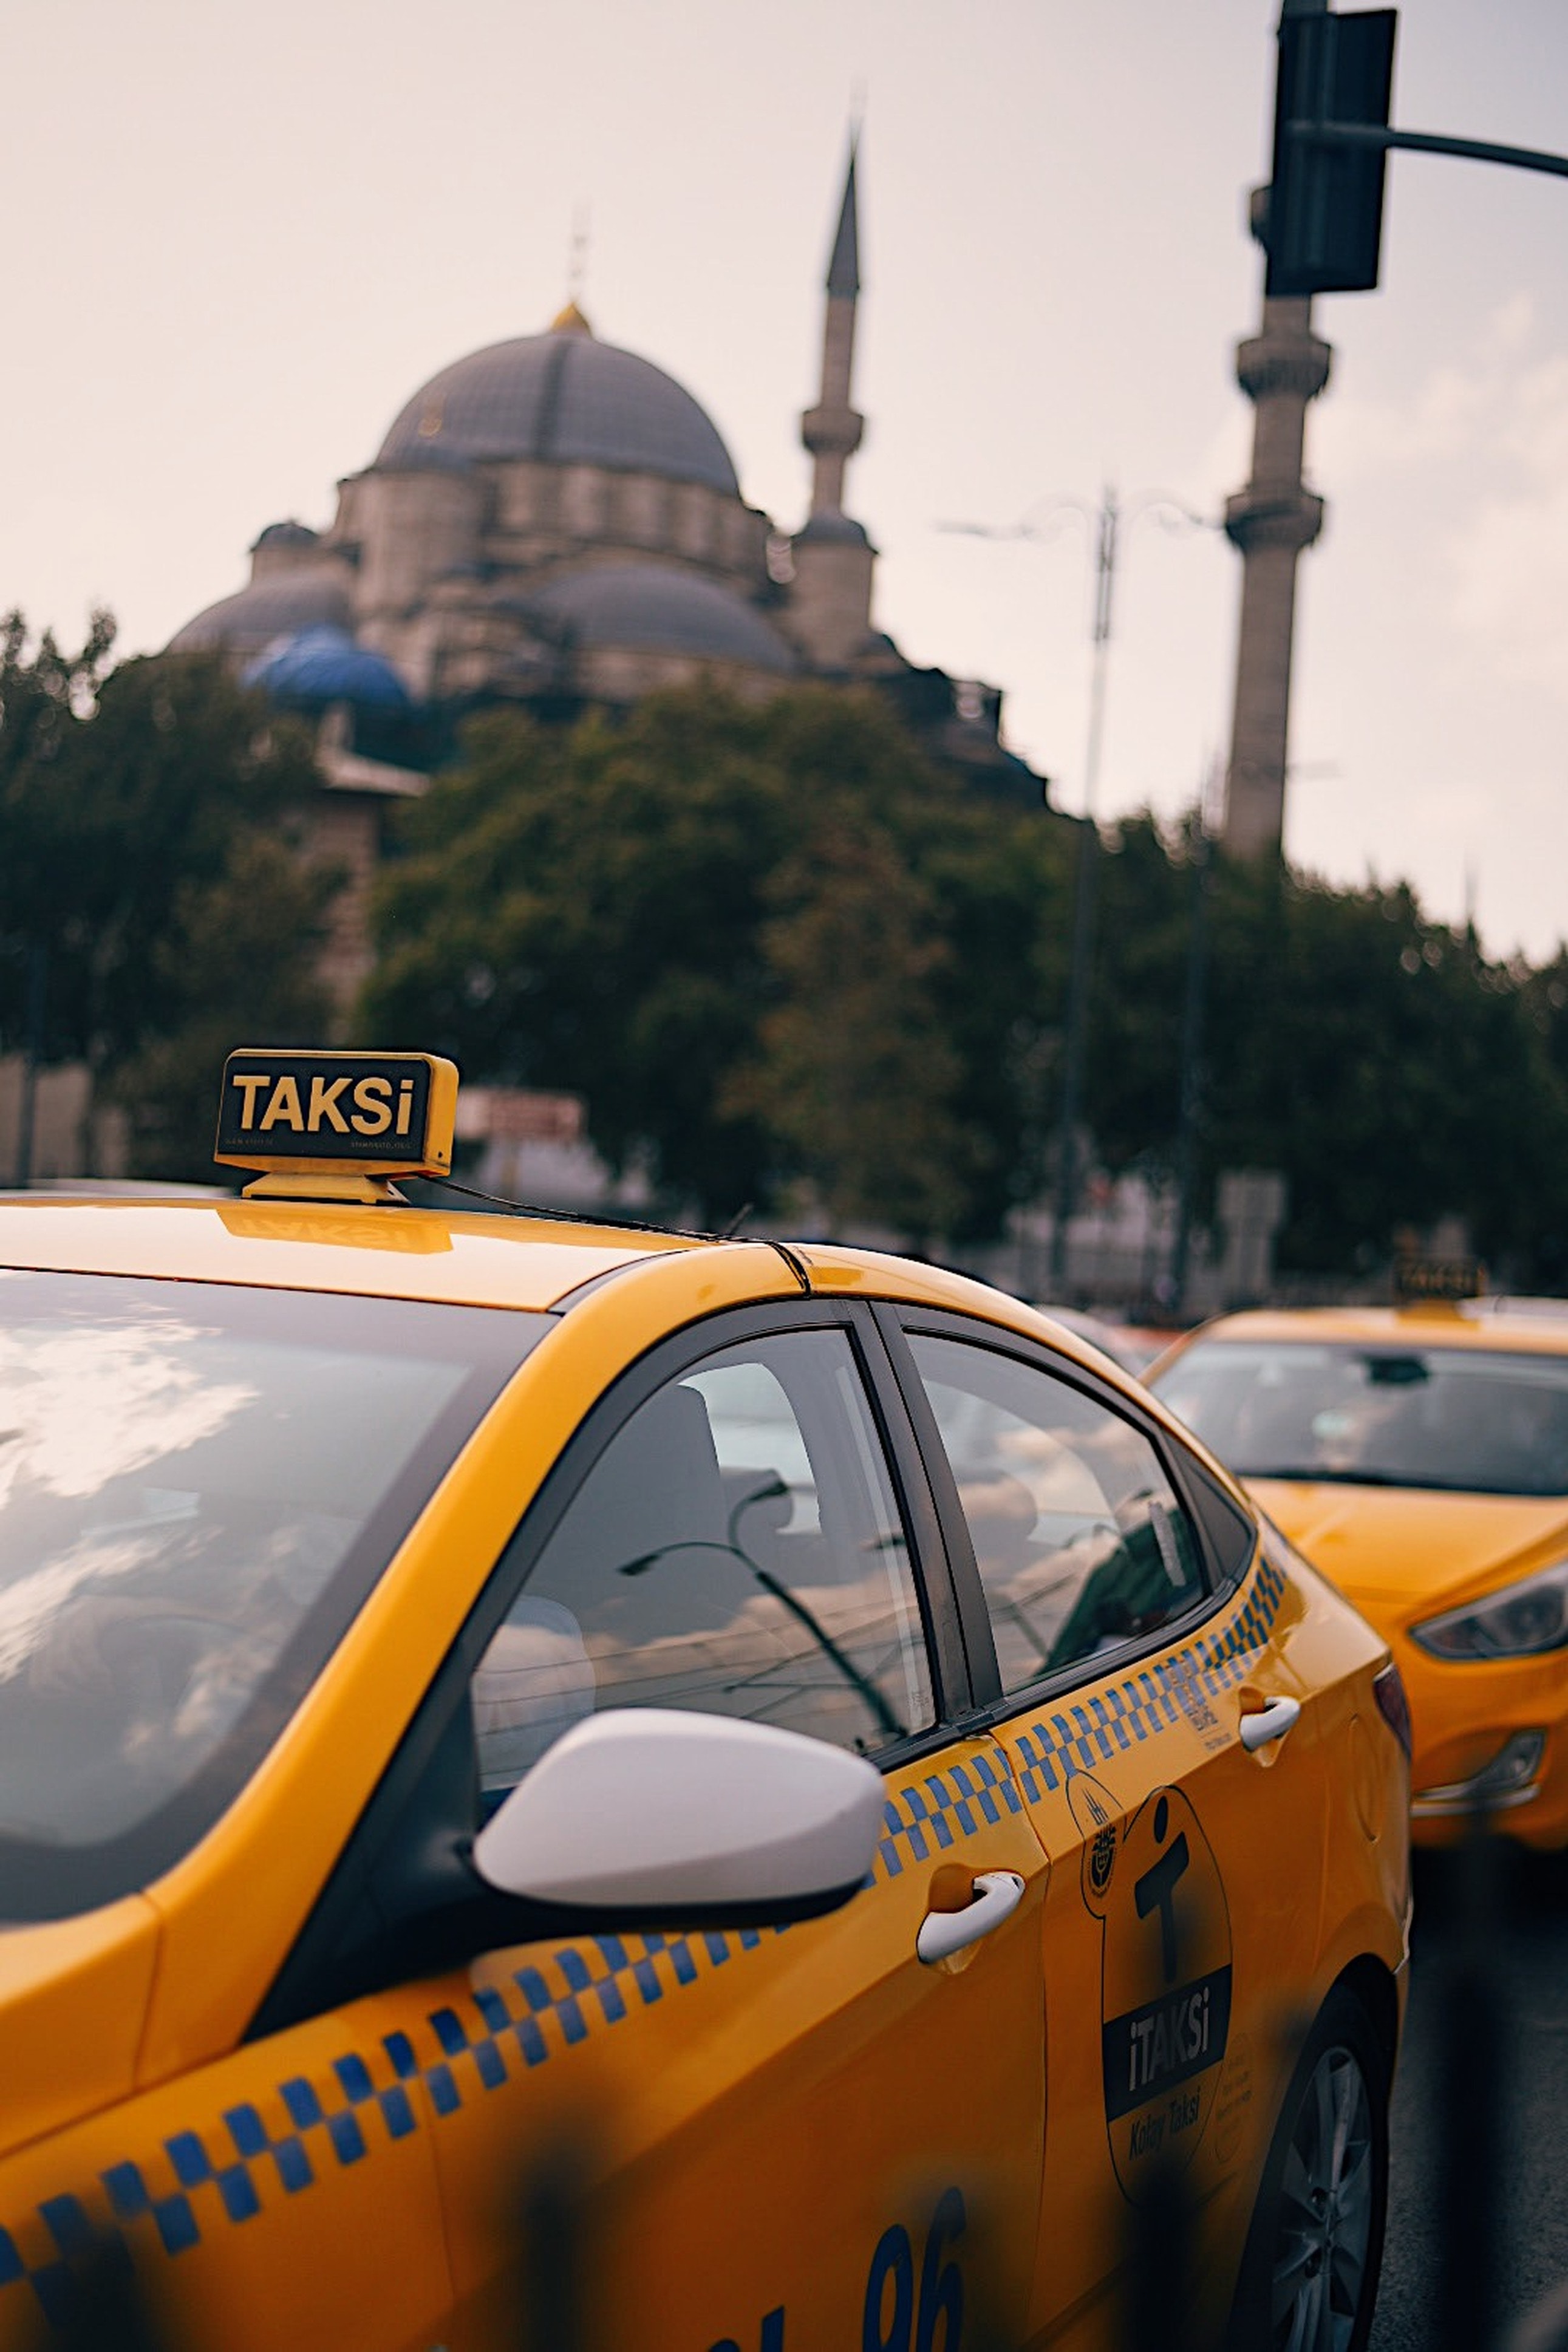 Satılık ticari taksi fiyatları neye göre belirlenir?